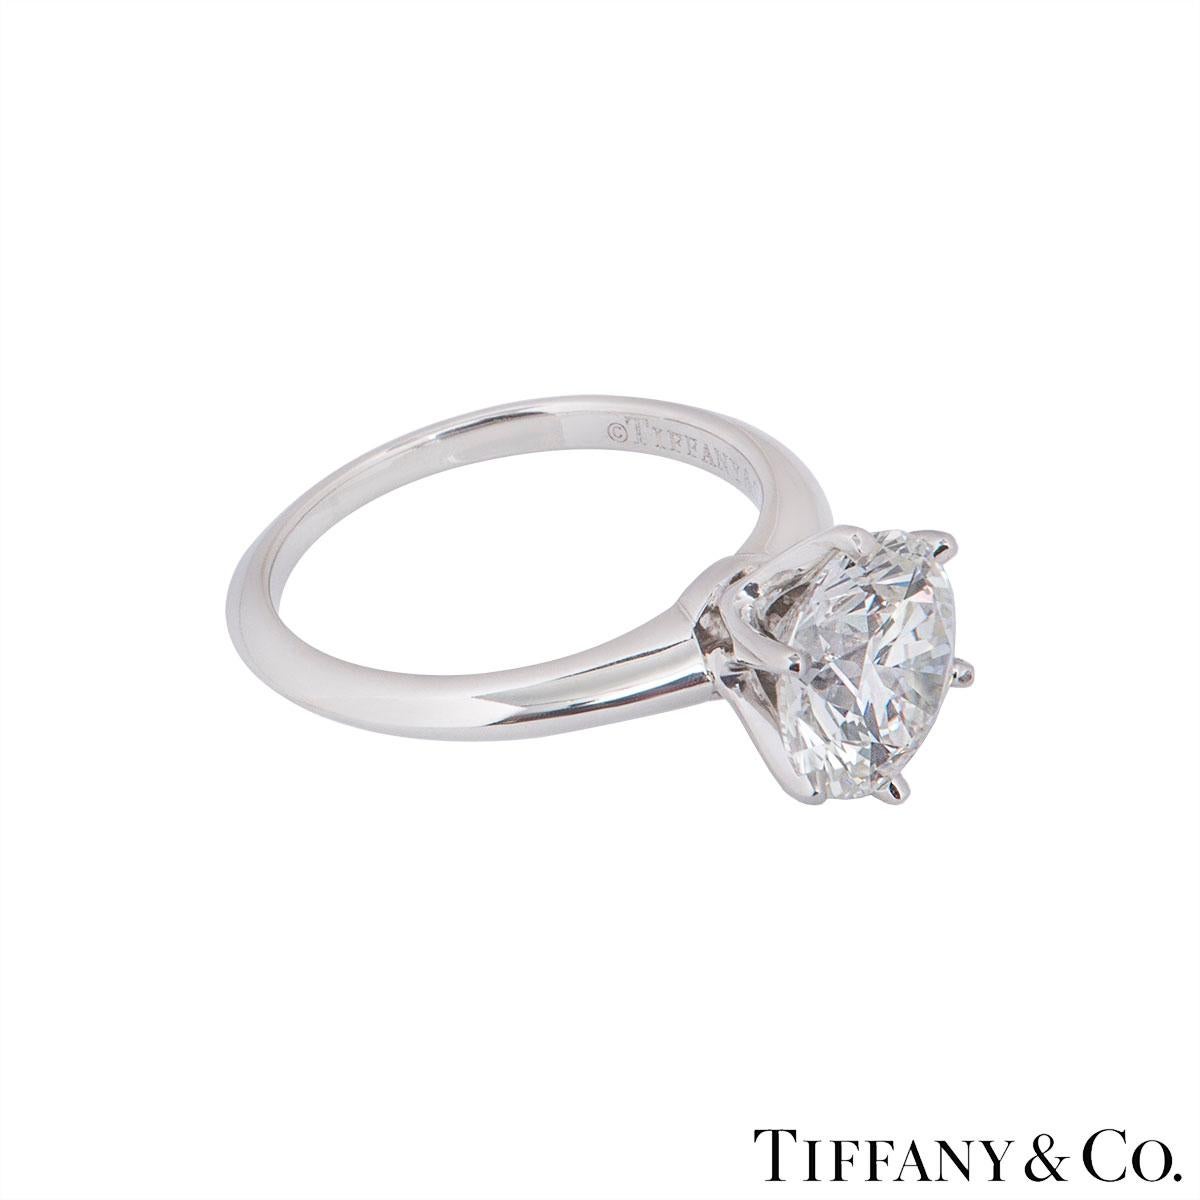 2.17 carat diamond ring tiffany